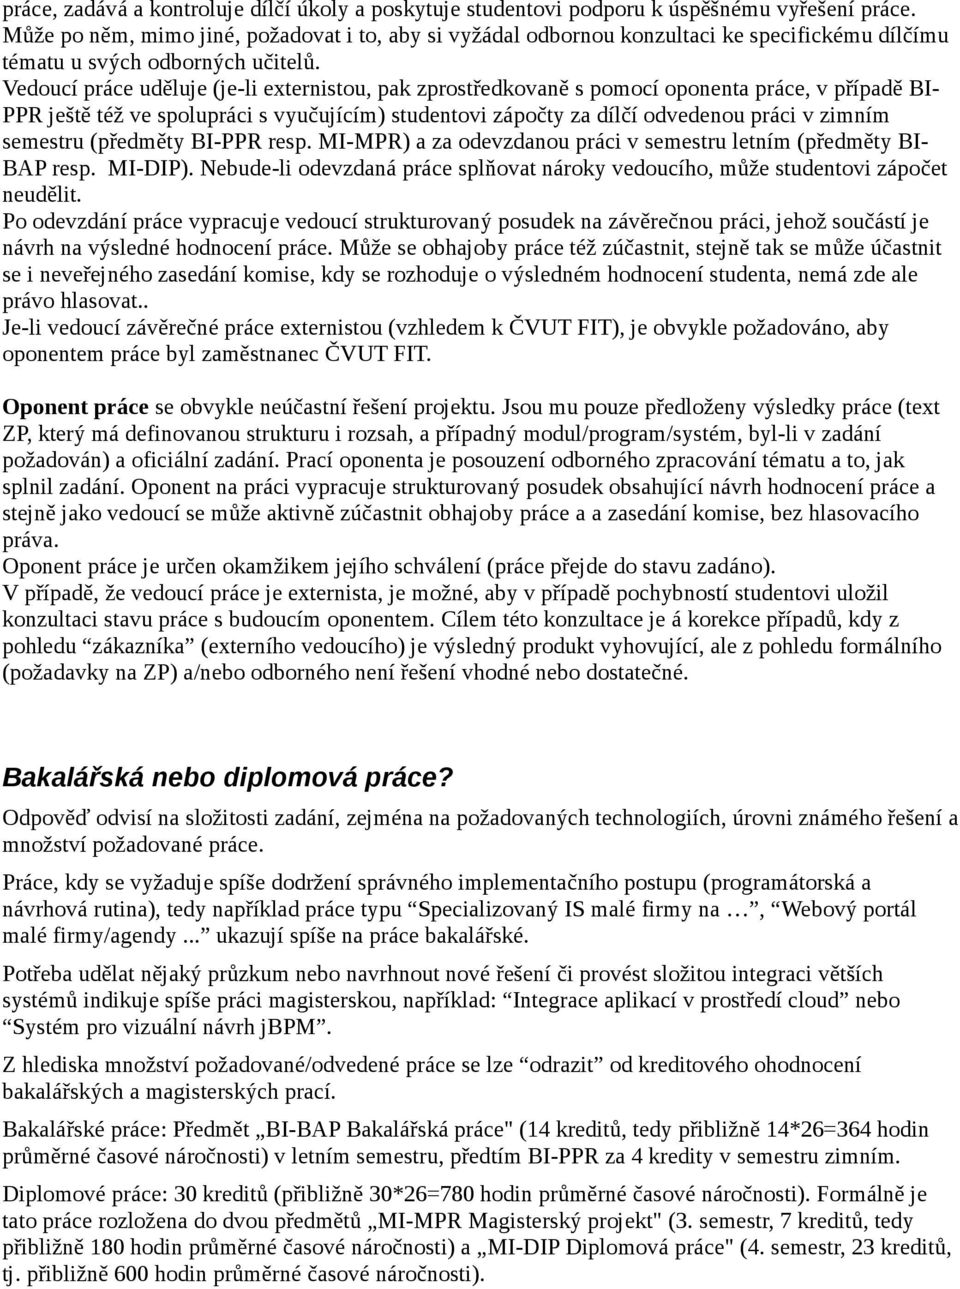 Manuál externího zadavatele/vedoucího/oponenta závěrečné práce na ČVUT FIT  - PDF Stažení zdarma